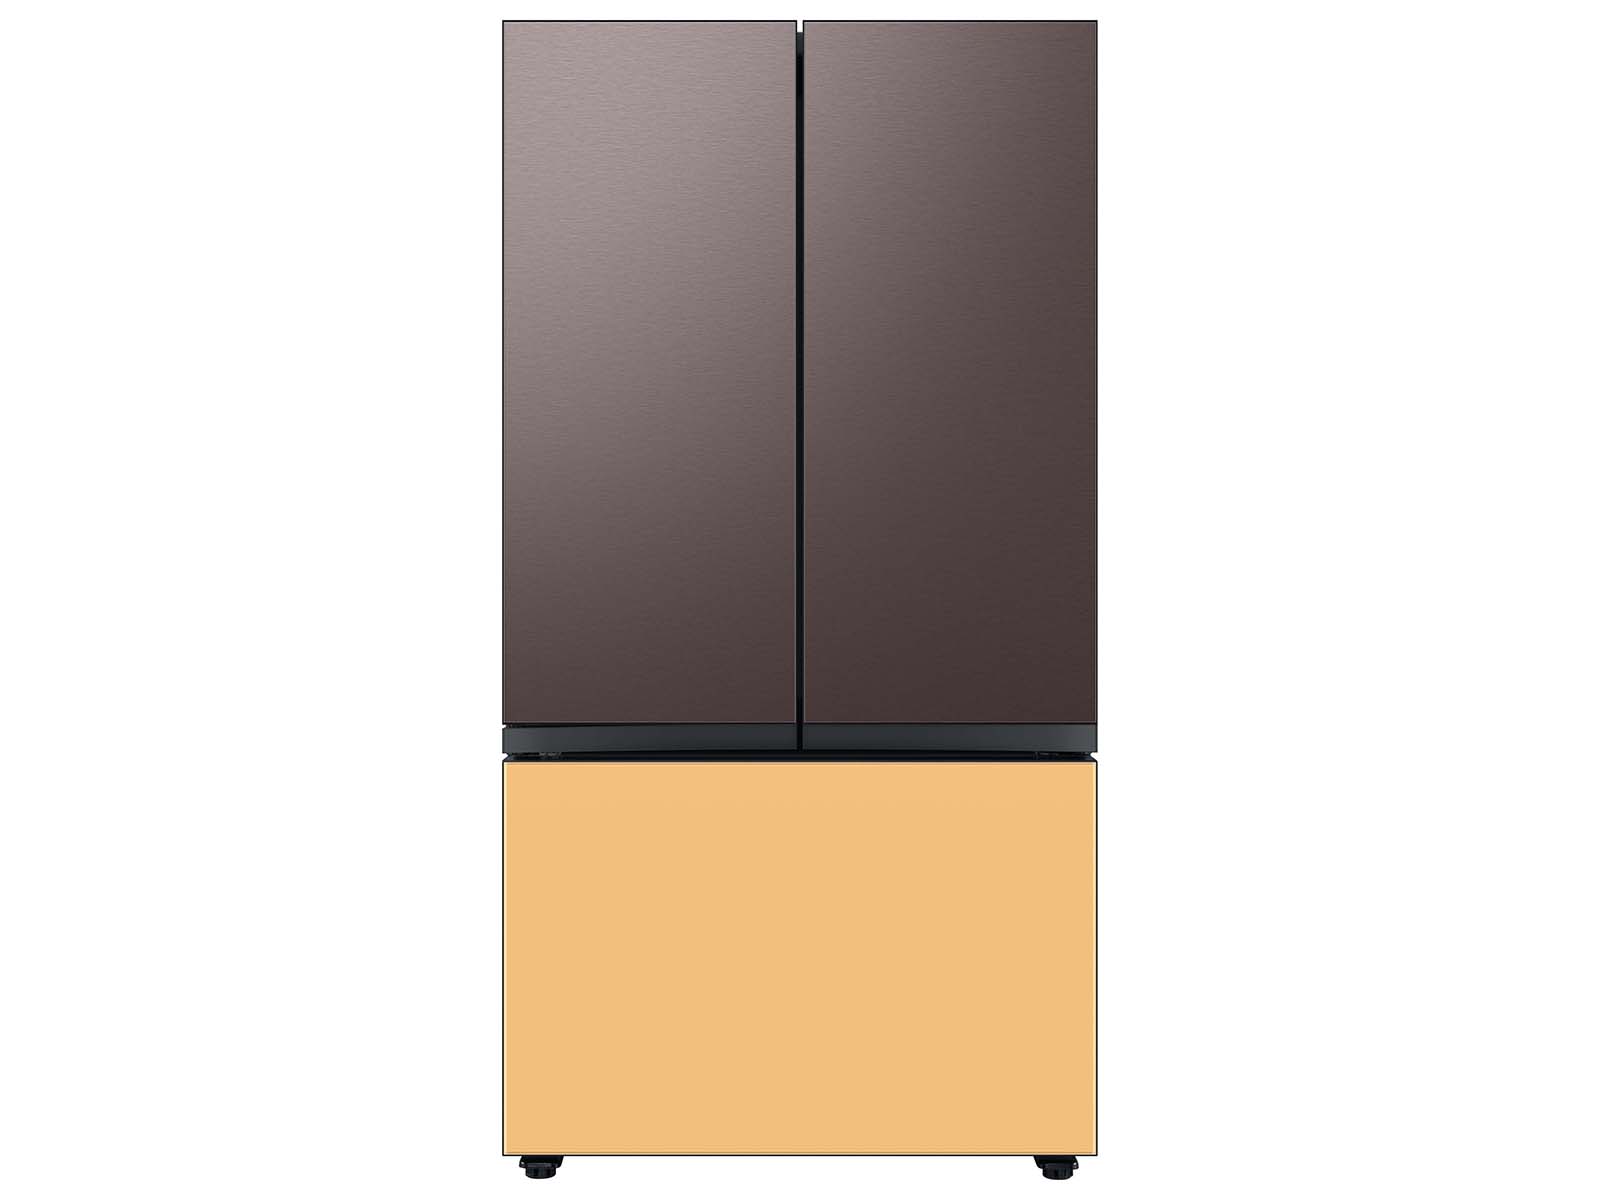 Thumbnail image of Bespoke 3-Door French Door Refrigerator Panel in Tuscan Steel - Top Panel